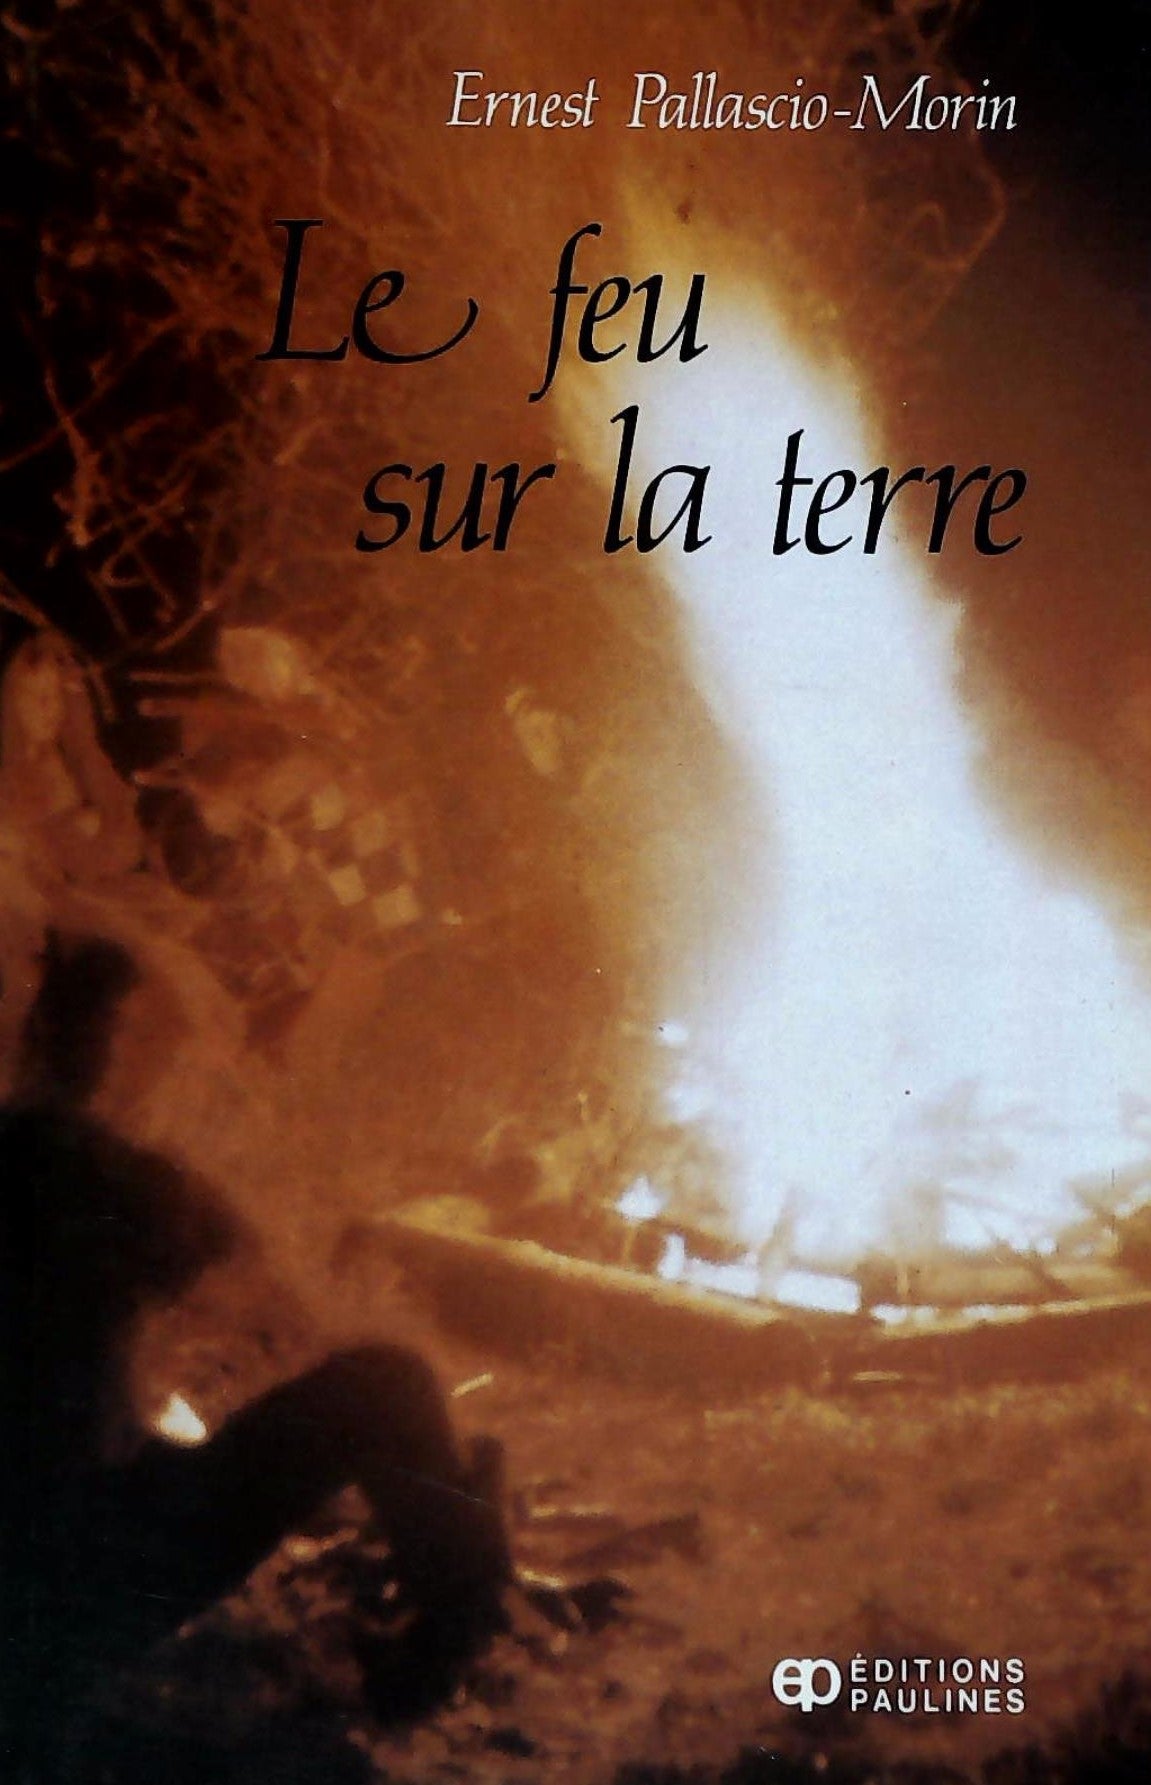 Livre ISBN 2890390349 Le feu sur la terre (Ernest Pallascio-Morin)